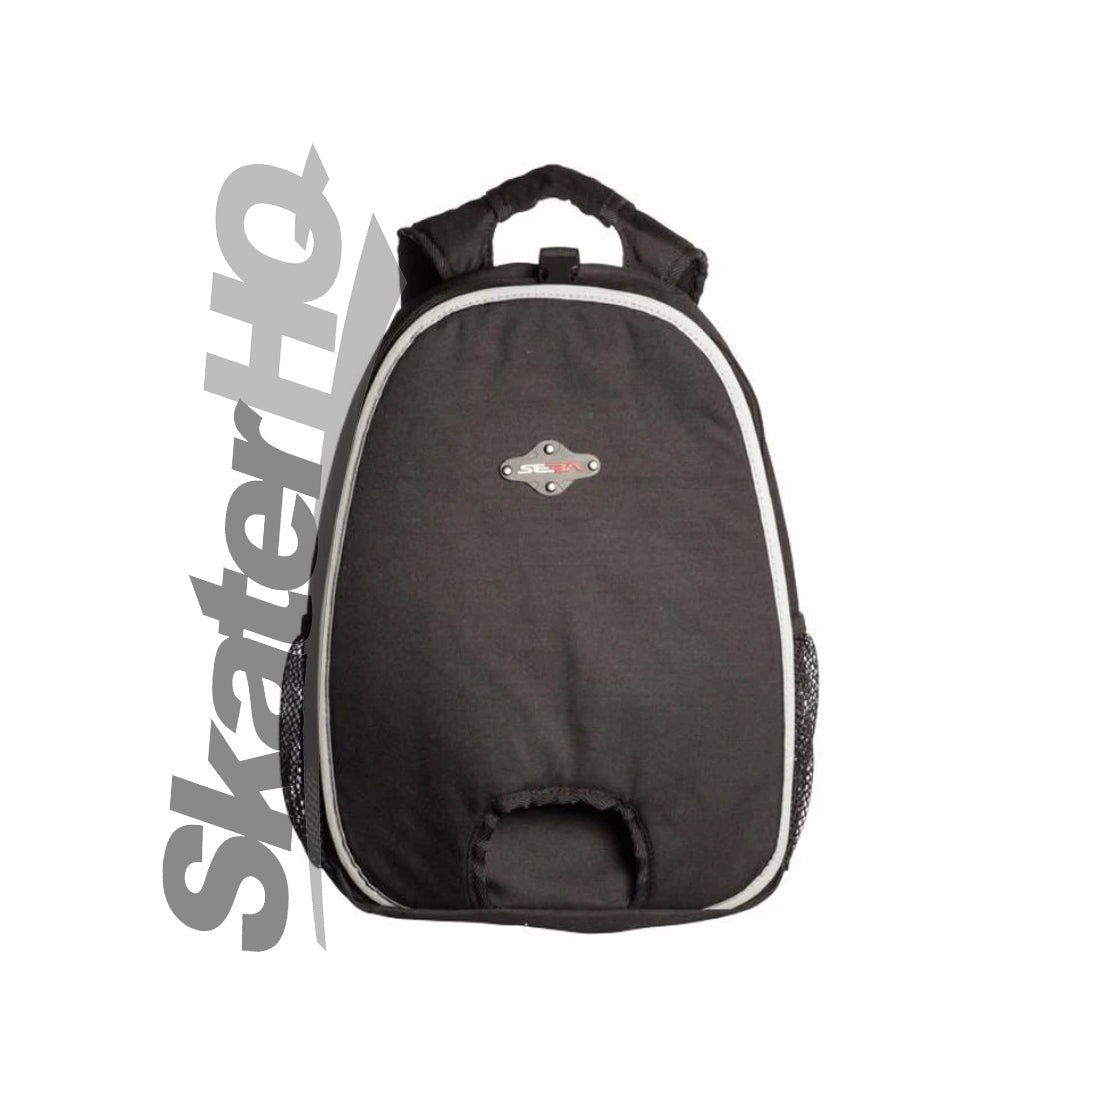 SEBA Backpack XSmall - Black Bags and Backpacks